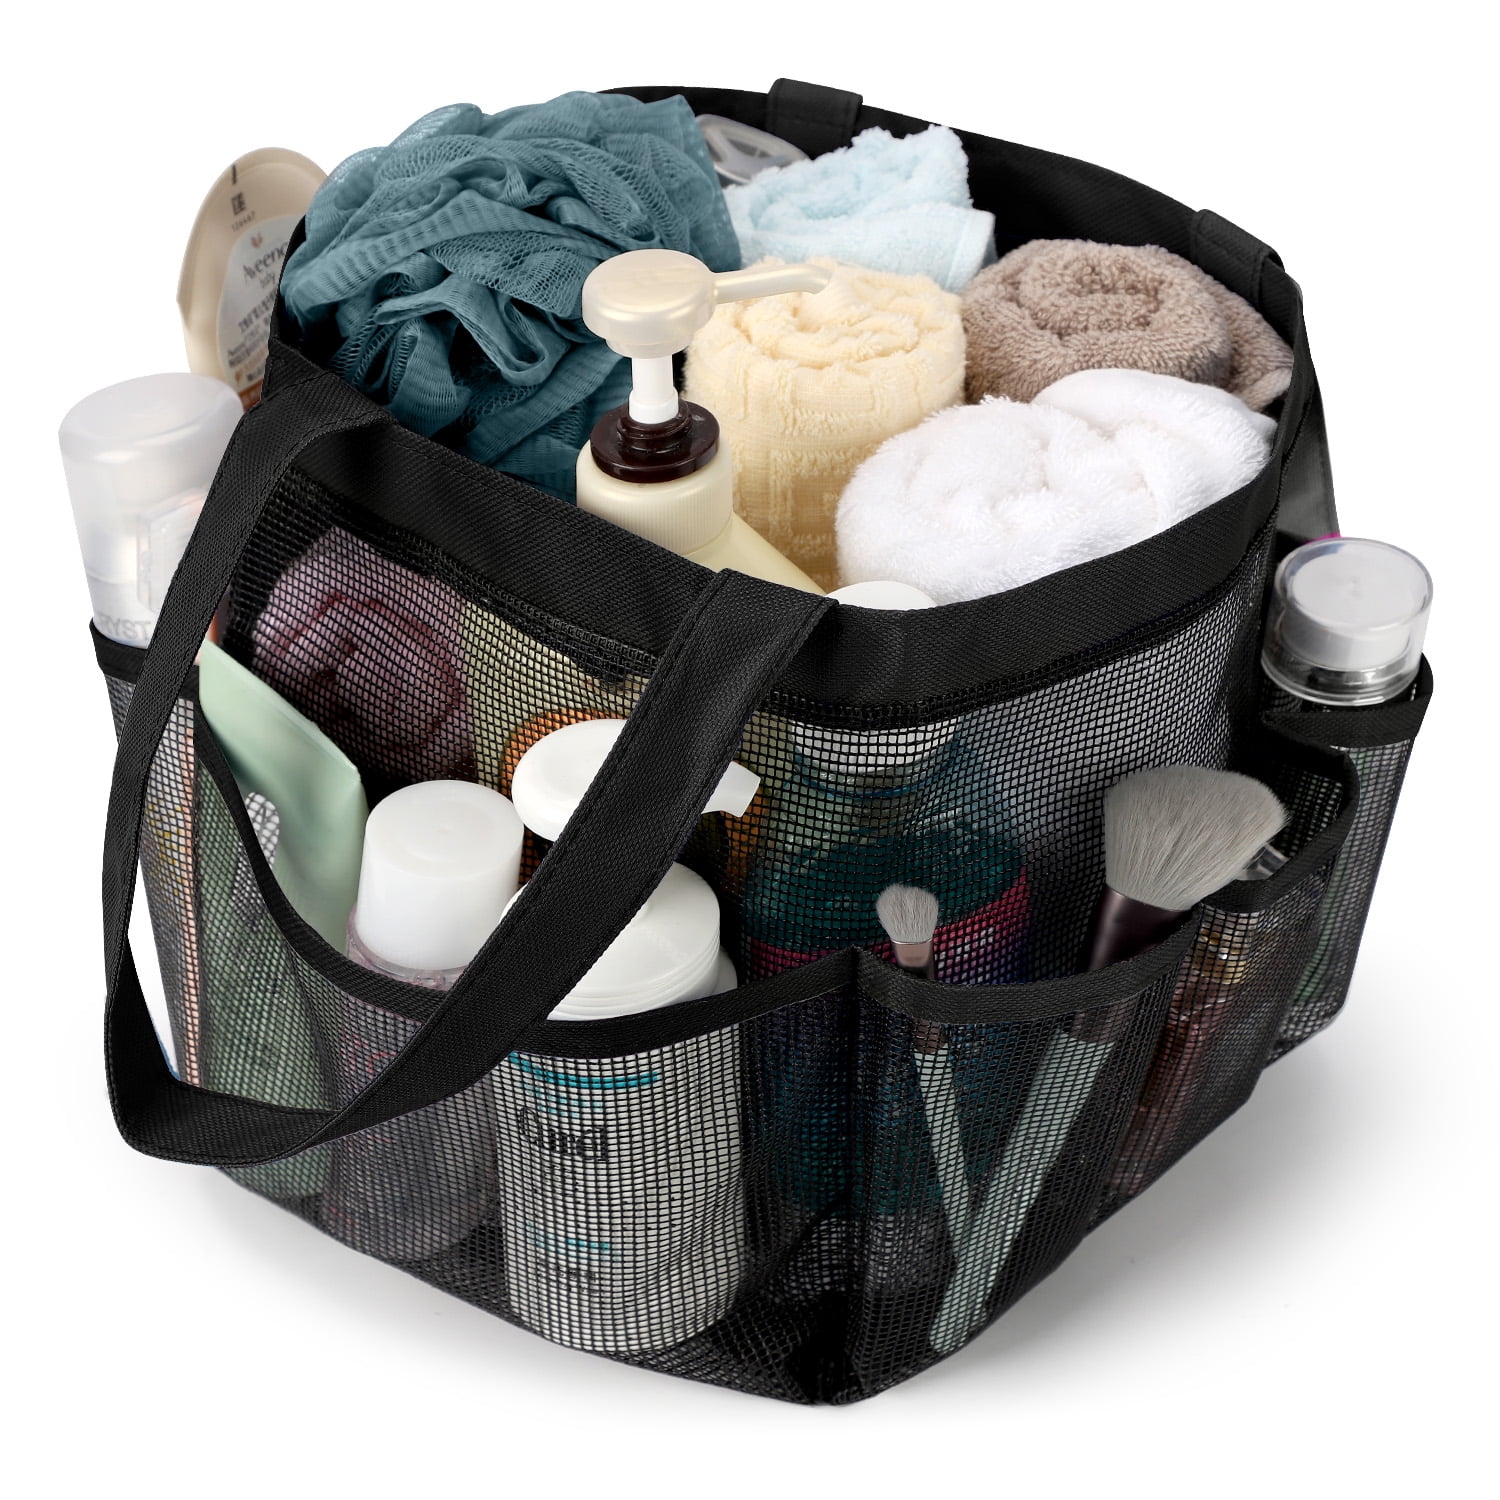 Livhil Mesh Shower Caddy Basket for College Dorm Room Essentials